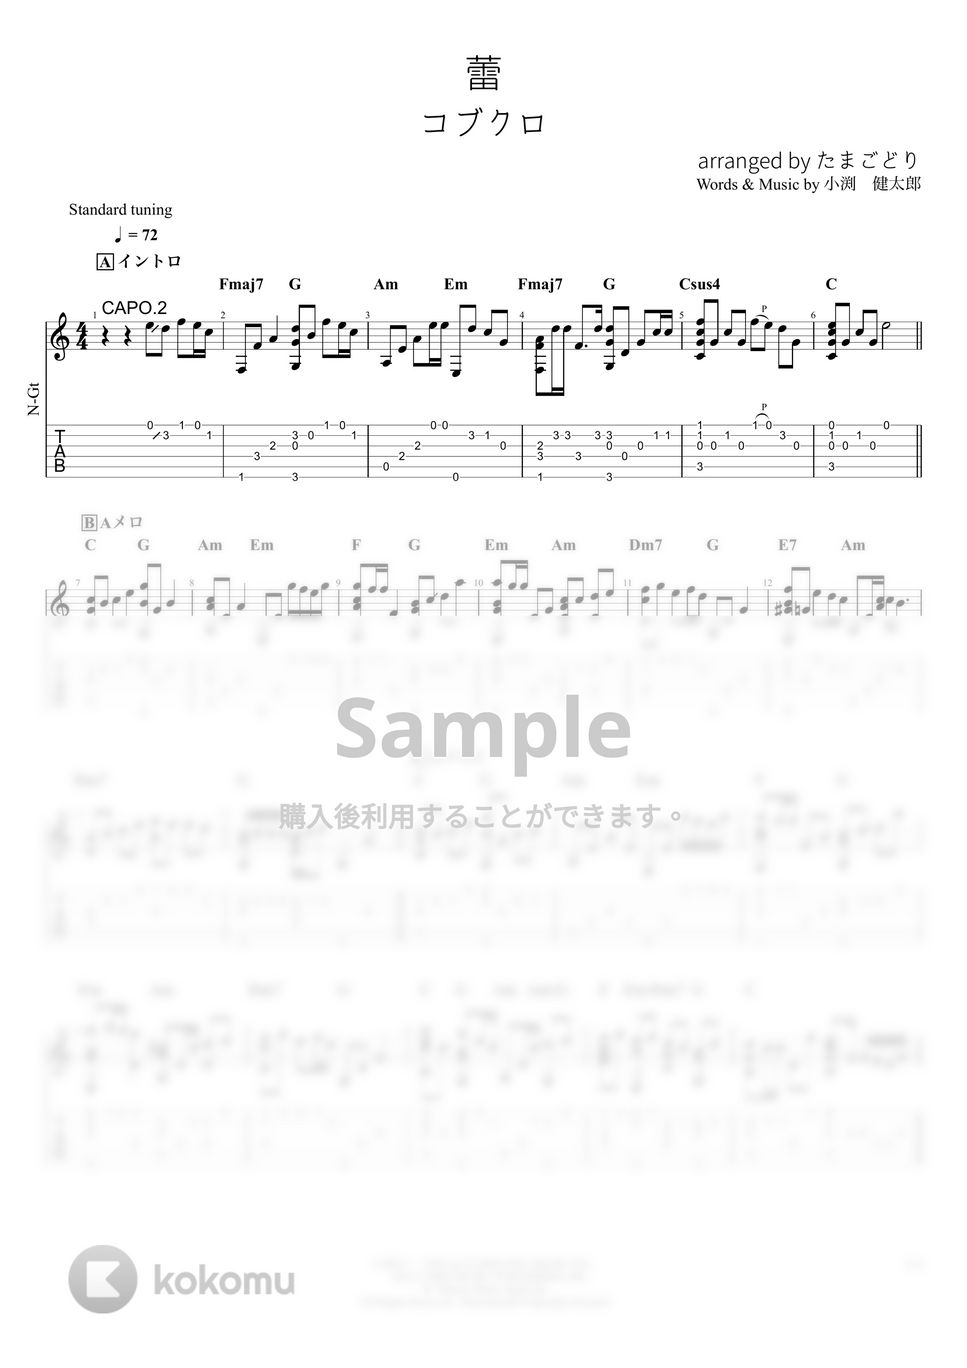 コブクロ - 蕾 (ソロギター) by たまごどり